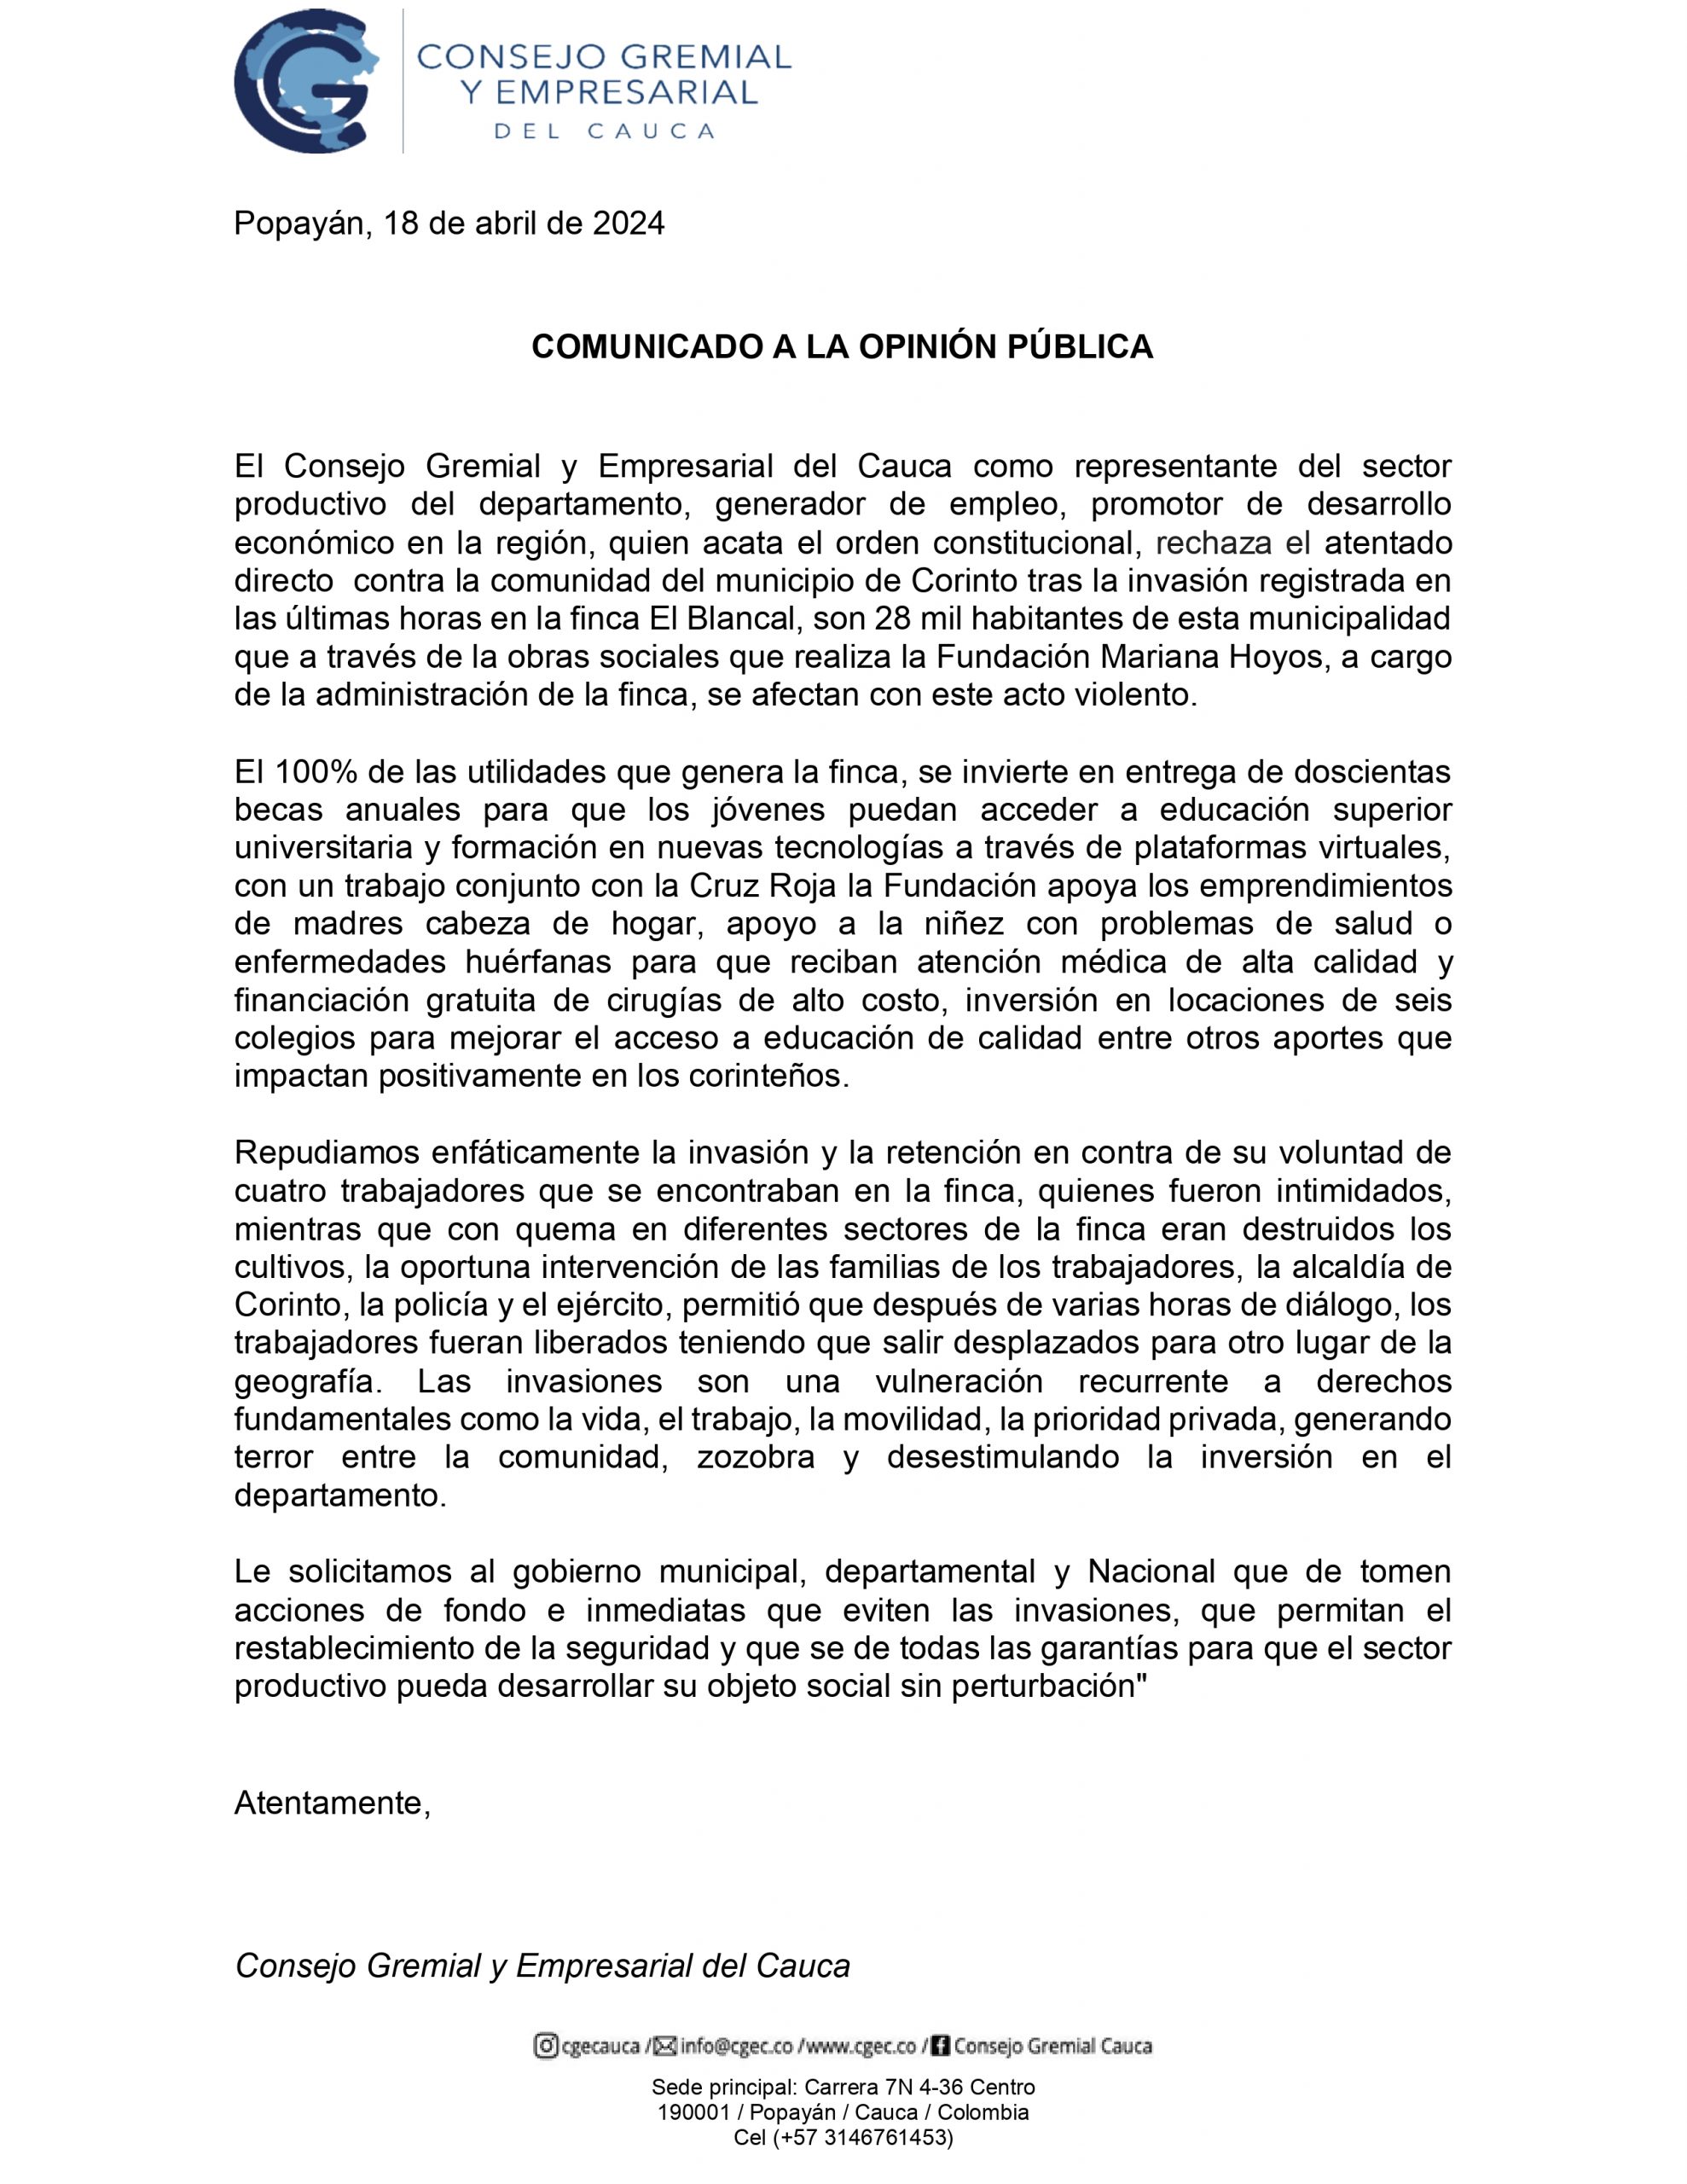 Consejo Gremial y Empresarial del Cauca, Rechaza la invasión a la finca El Blancal, del municipio de Corinto